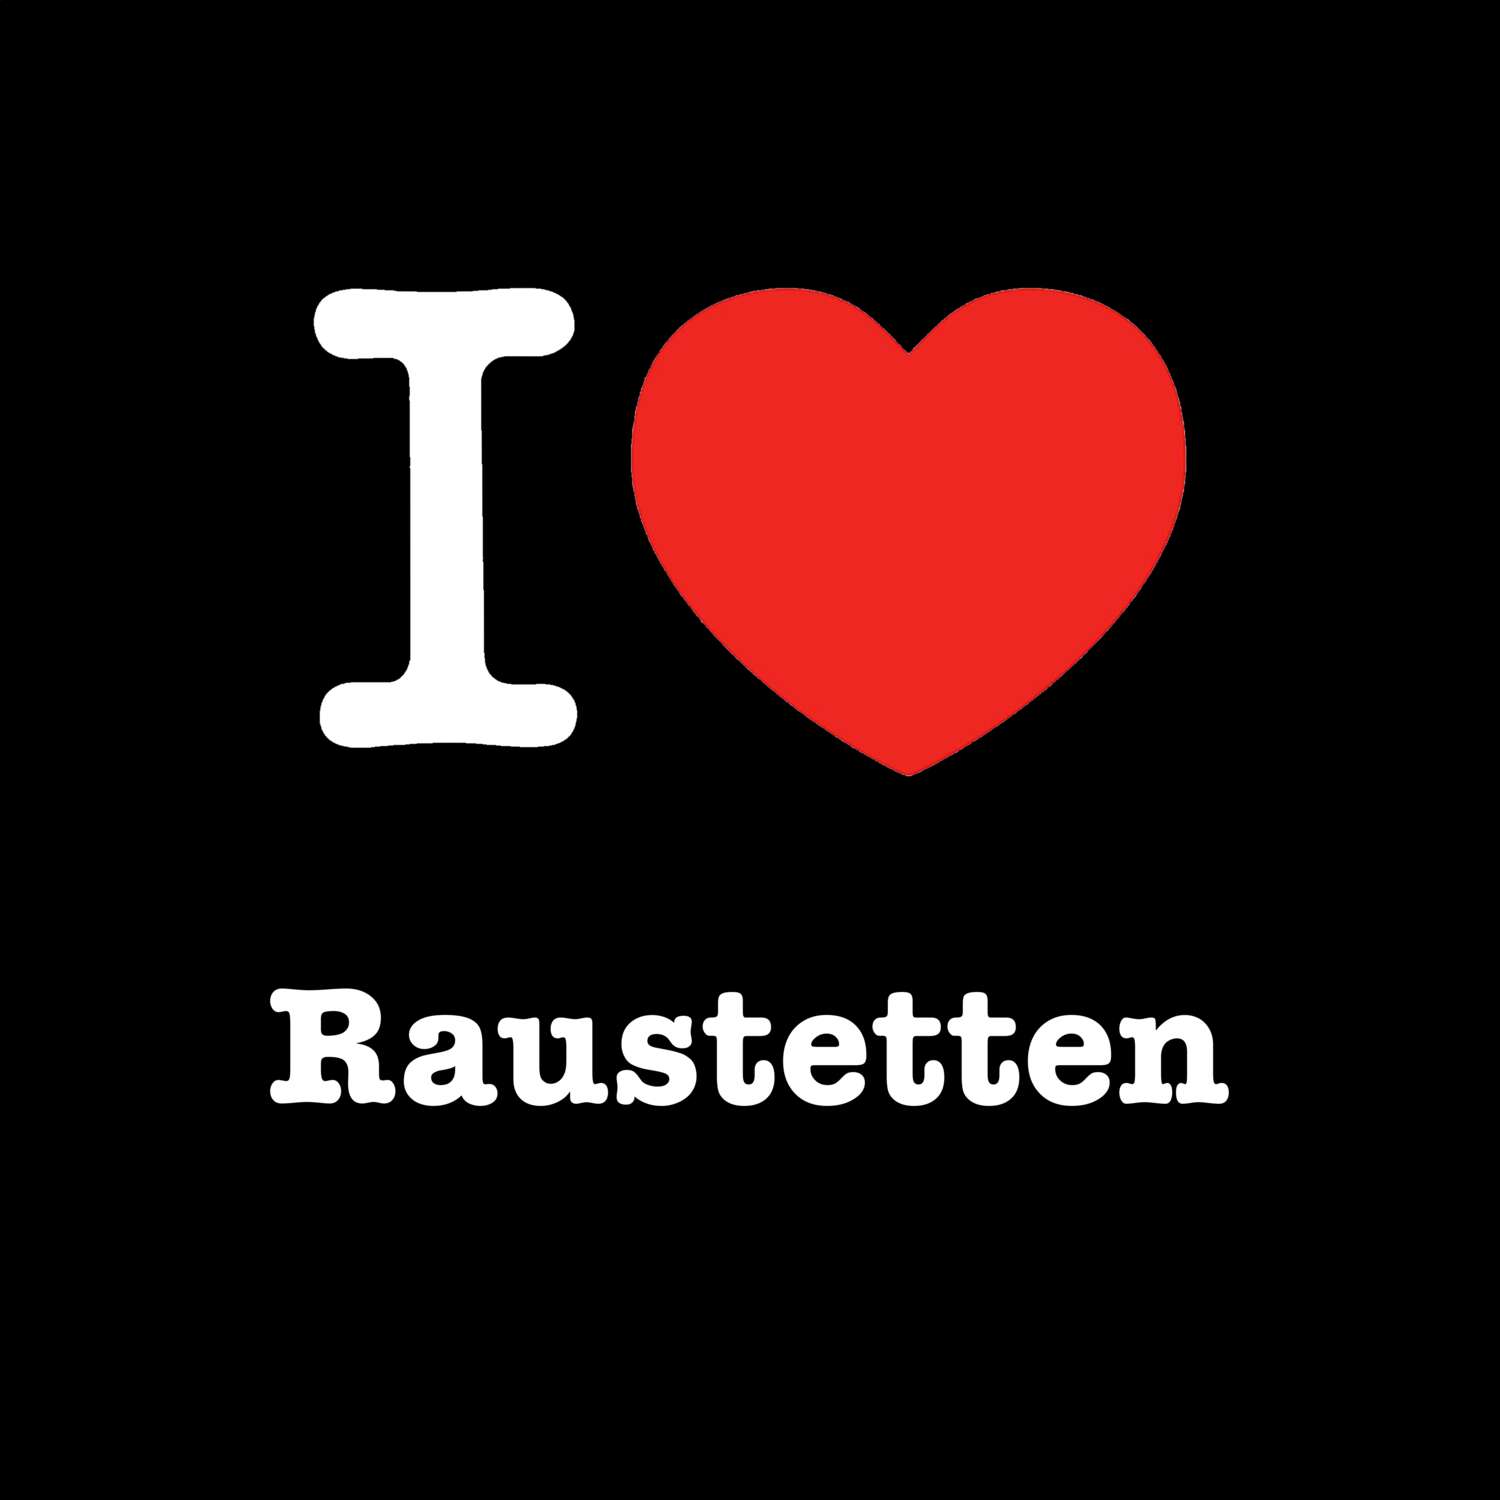 Raustetten T-Shirt »I love«